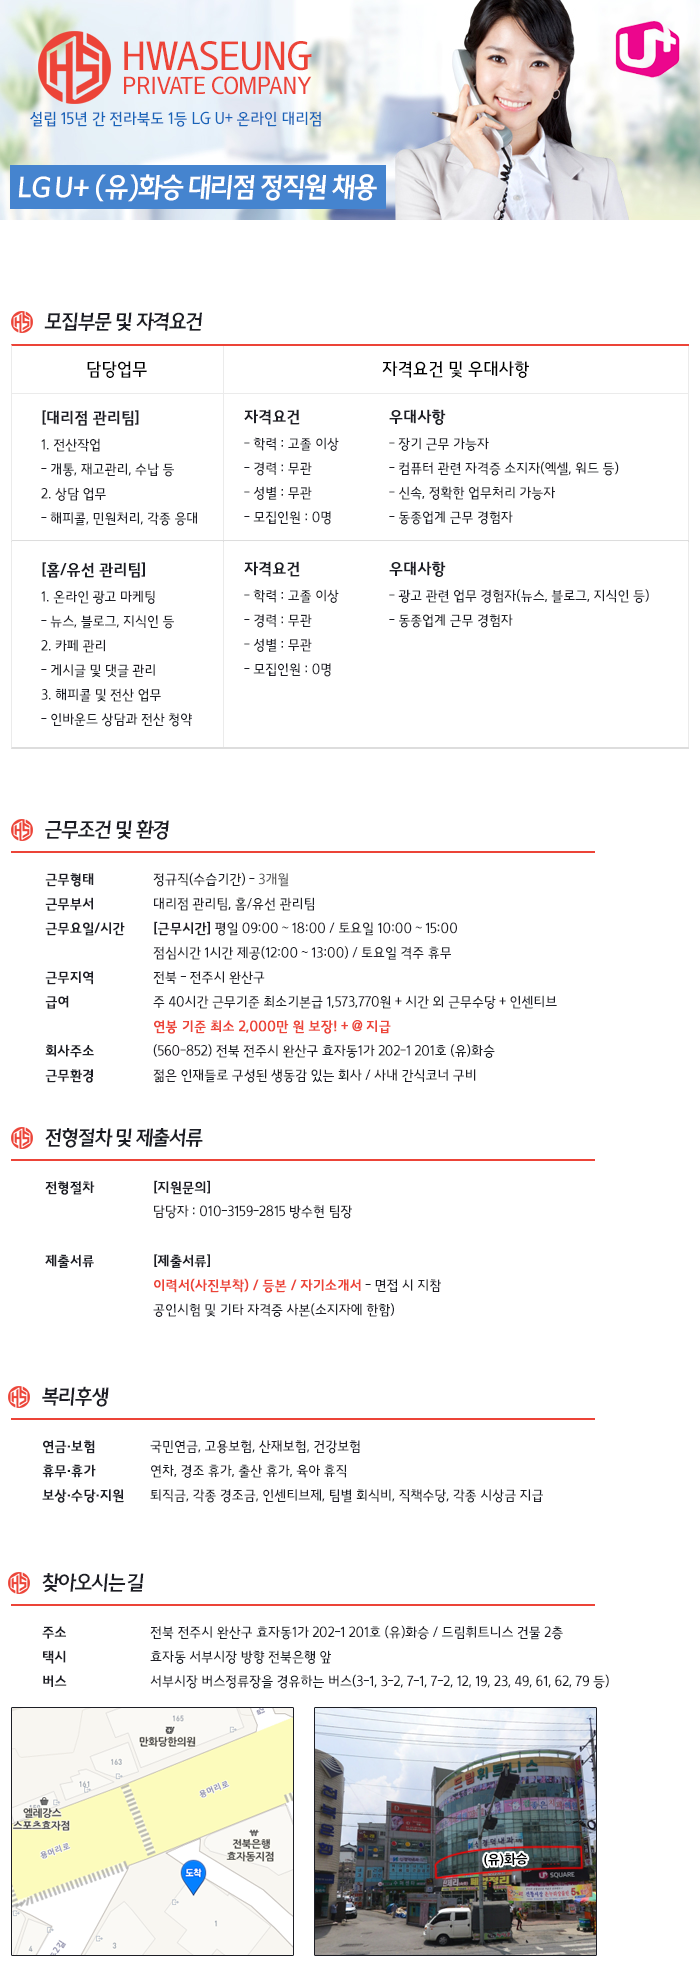 [정규직] LG U+ 온라인 유/무선 및 대리점 관리팀 CS(전산) 채용